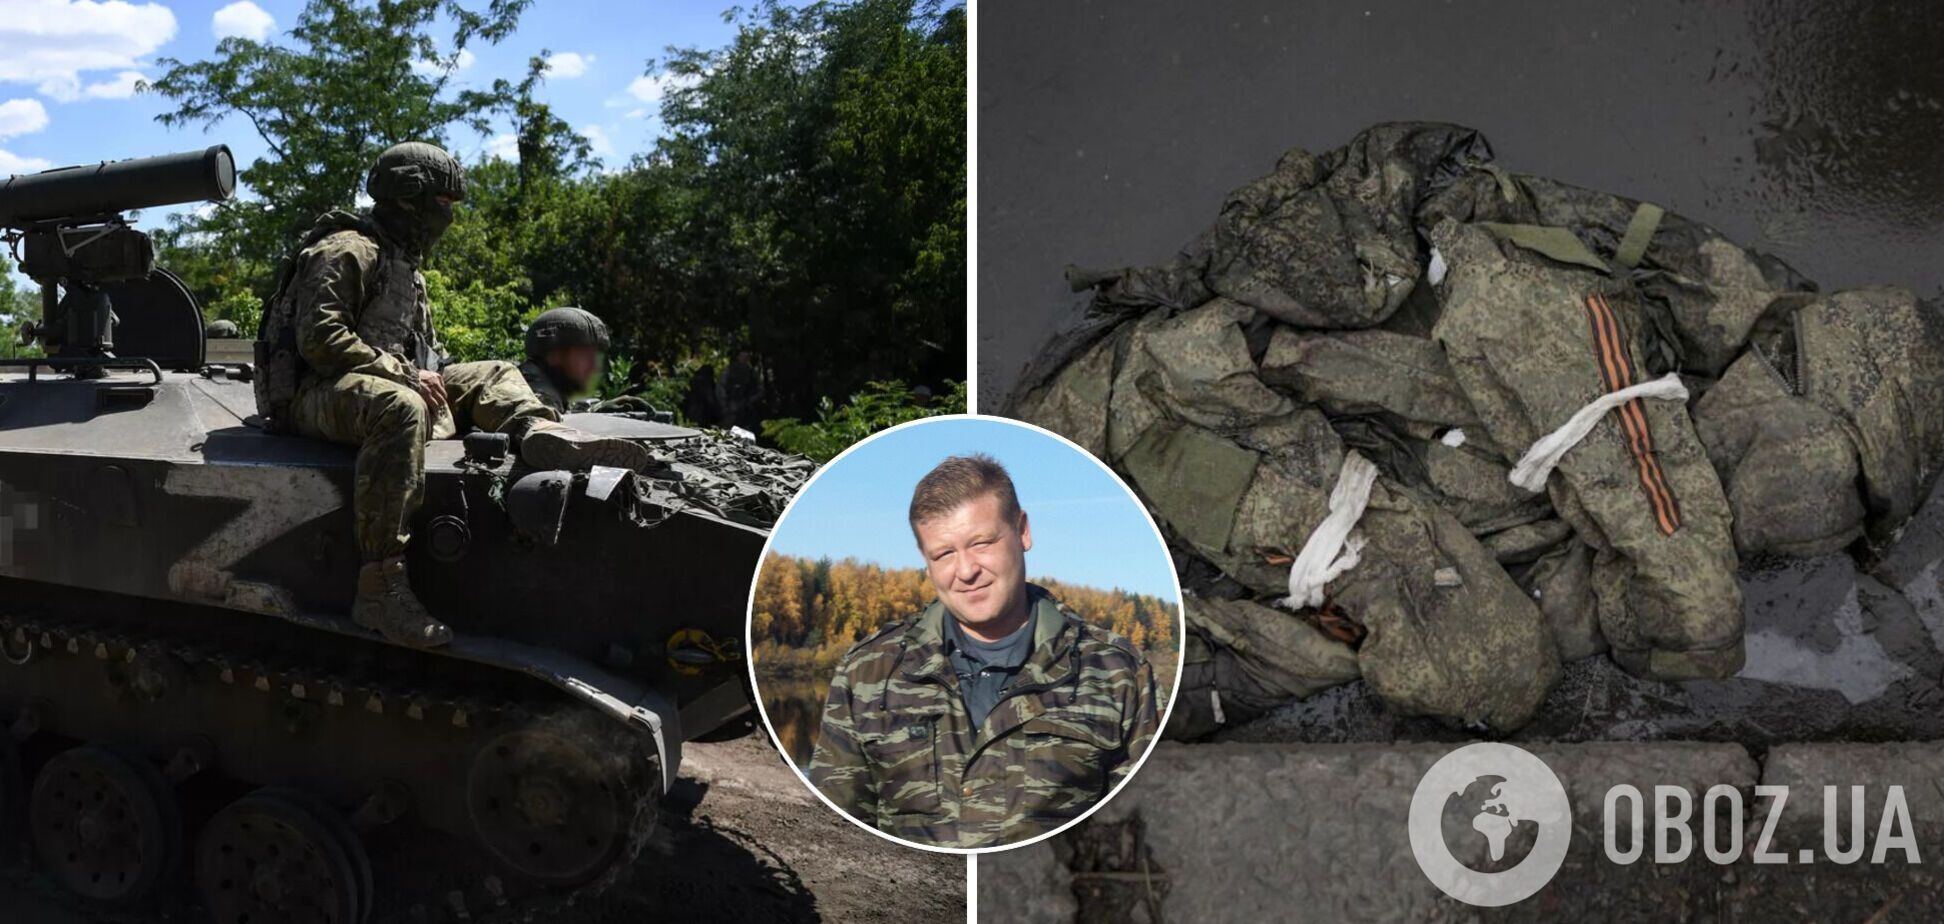 Проехал 2 тыс. км, чтобы умереть в Украине: ликвидирован оккупант с 'символической' фамилией Зезегов. Фото